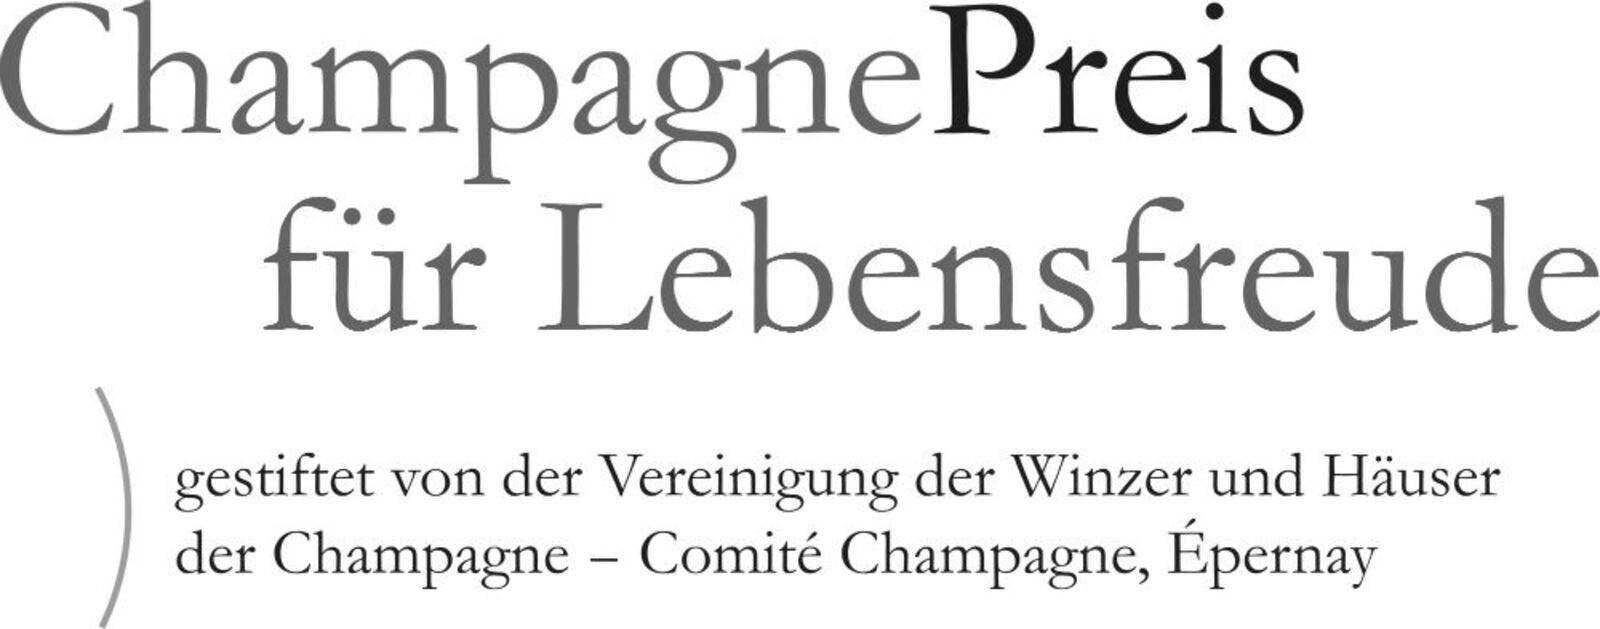 Kent Nagano mit dem Champagne-Preis für Lebensfreude 2018 ausgezeichnet